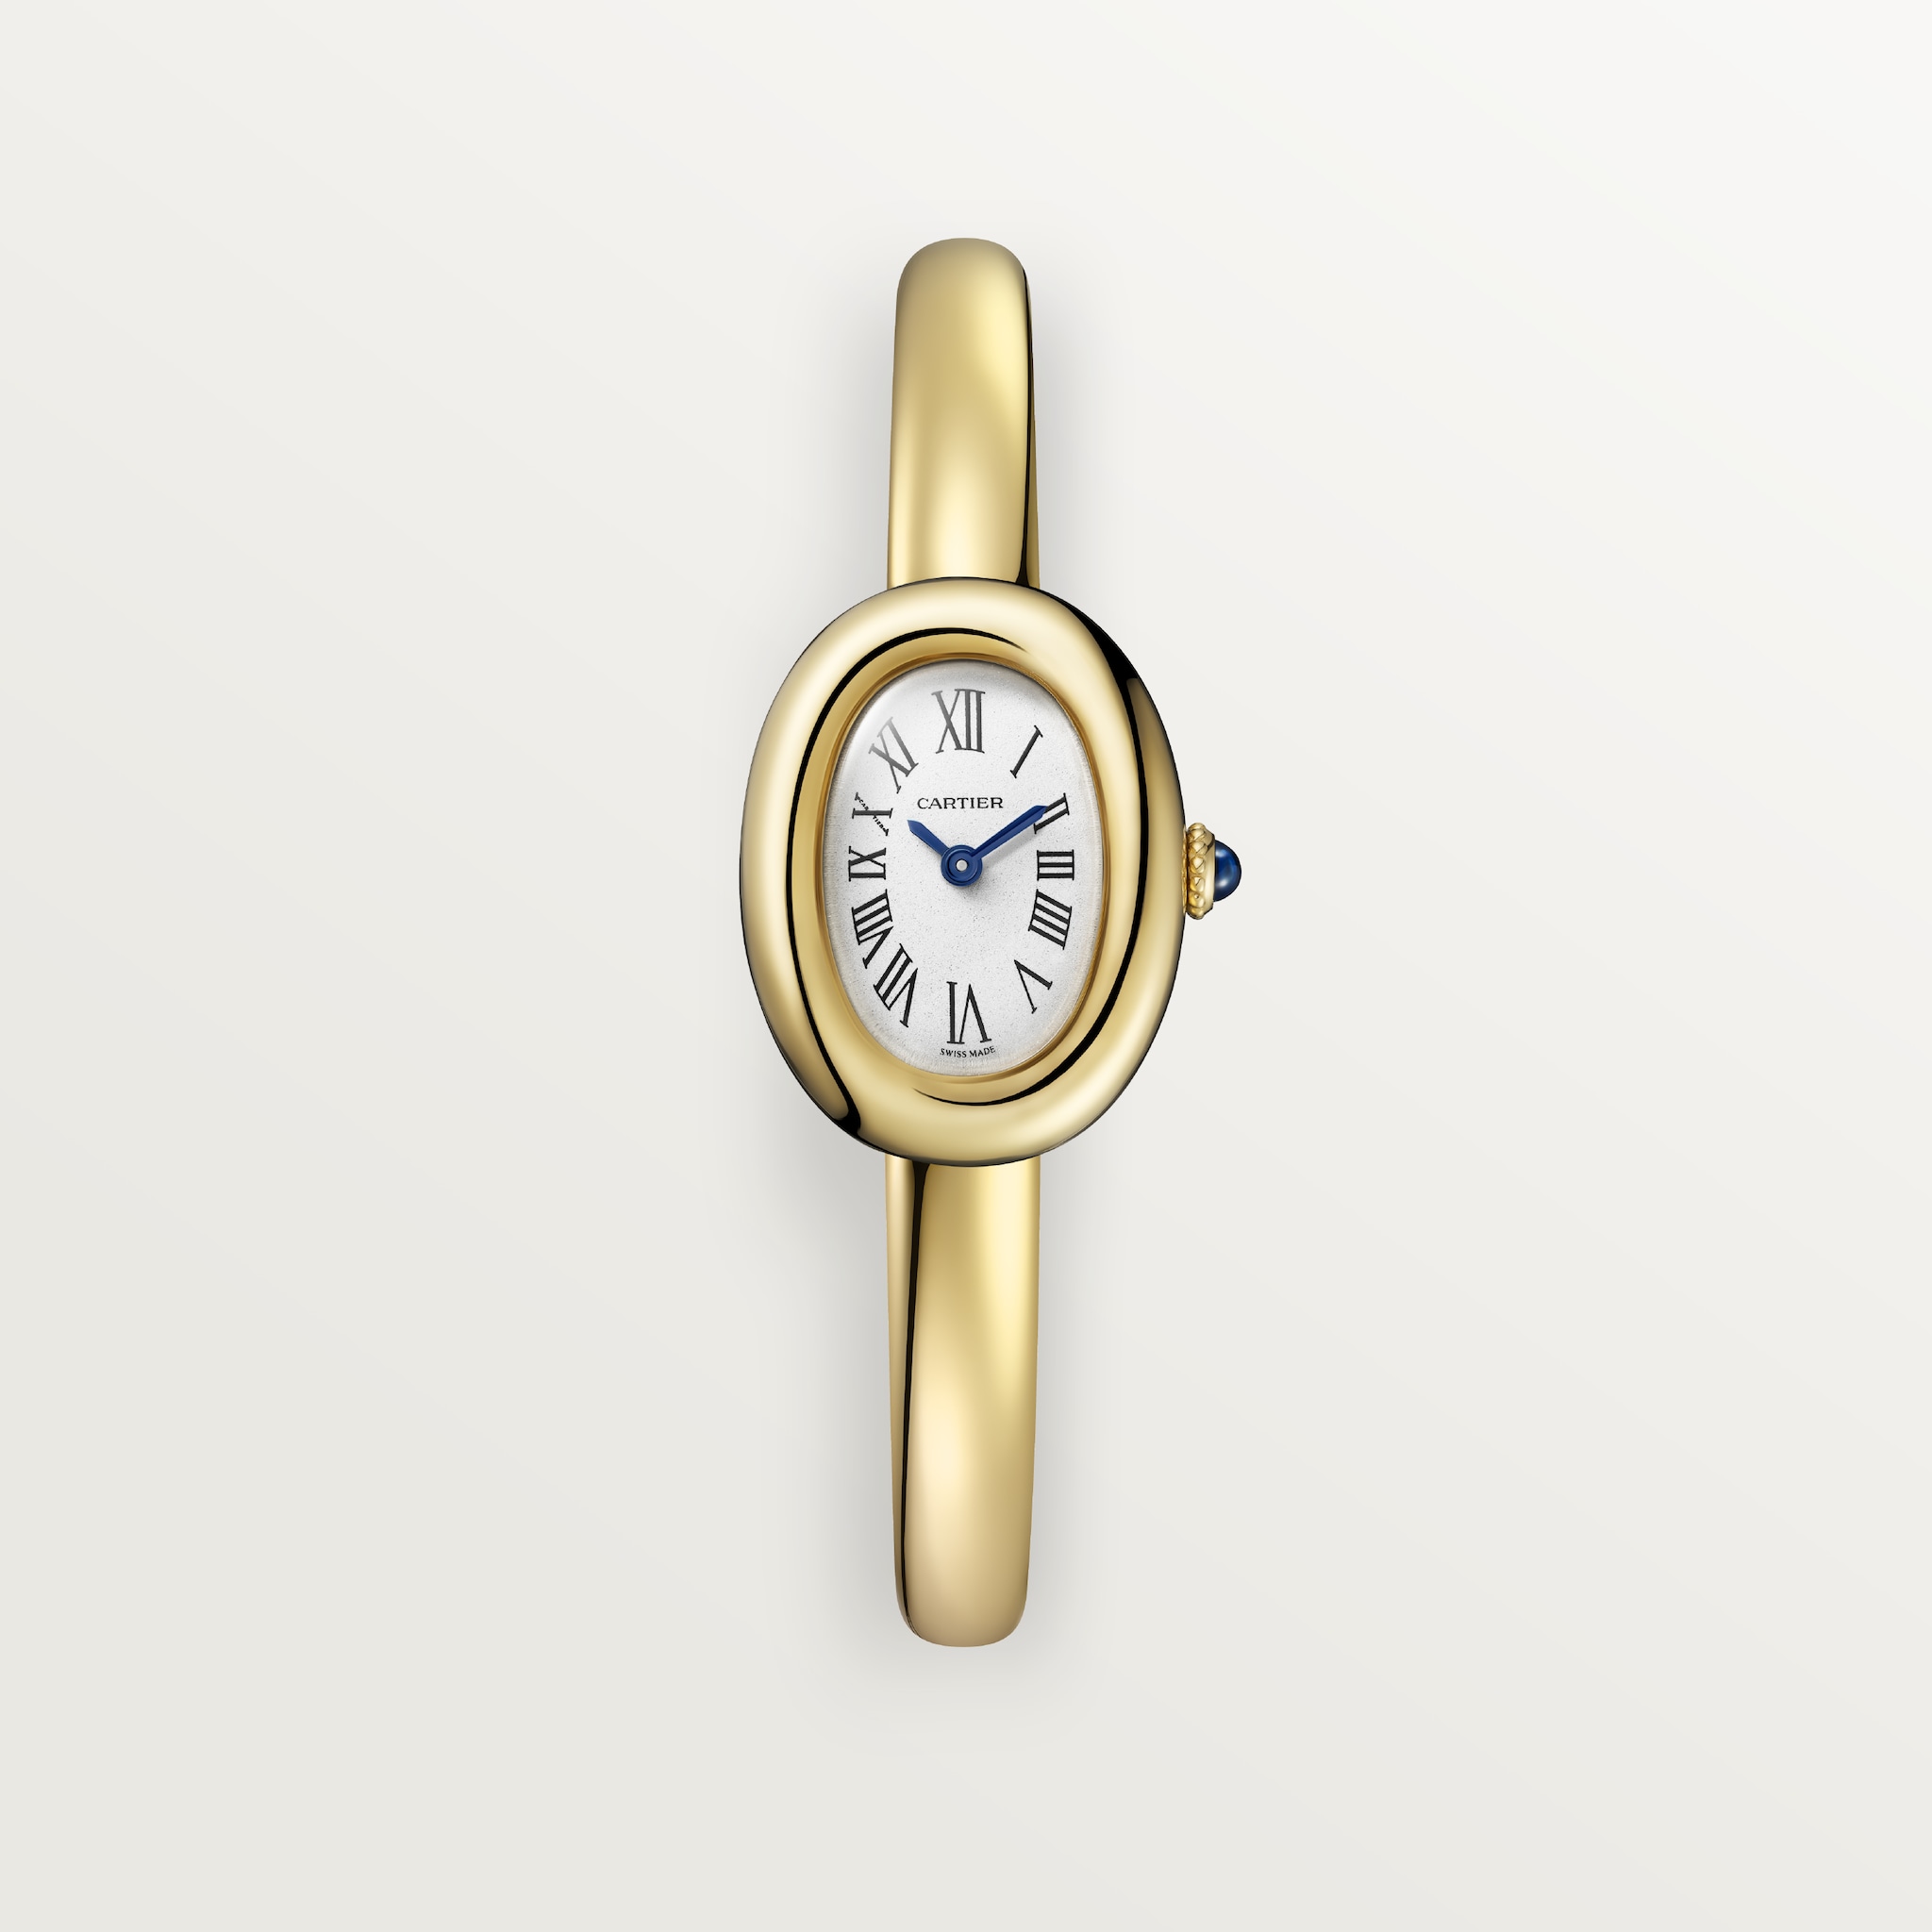 Baignoire watch (Size 15)Mini model, quartz movement, yellow gold